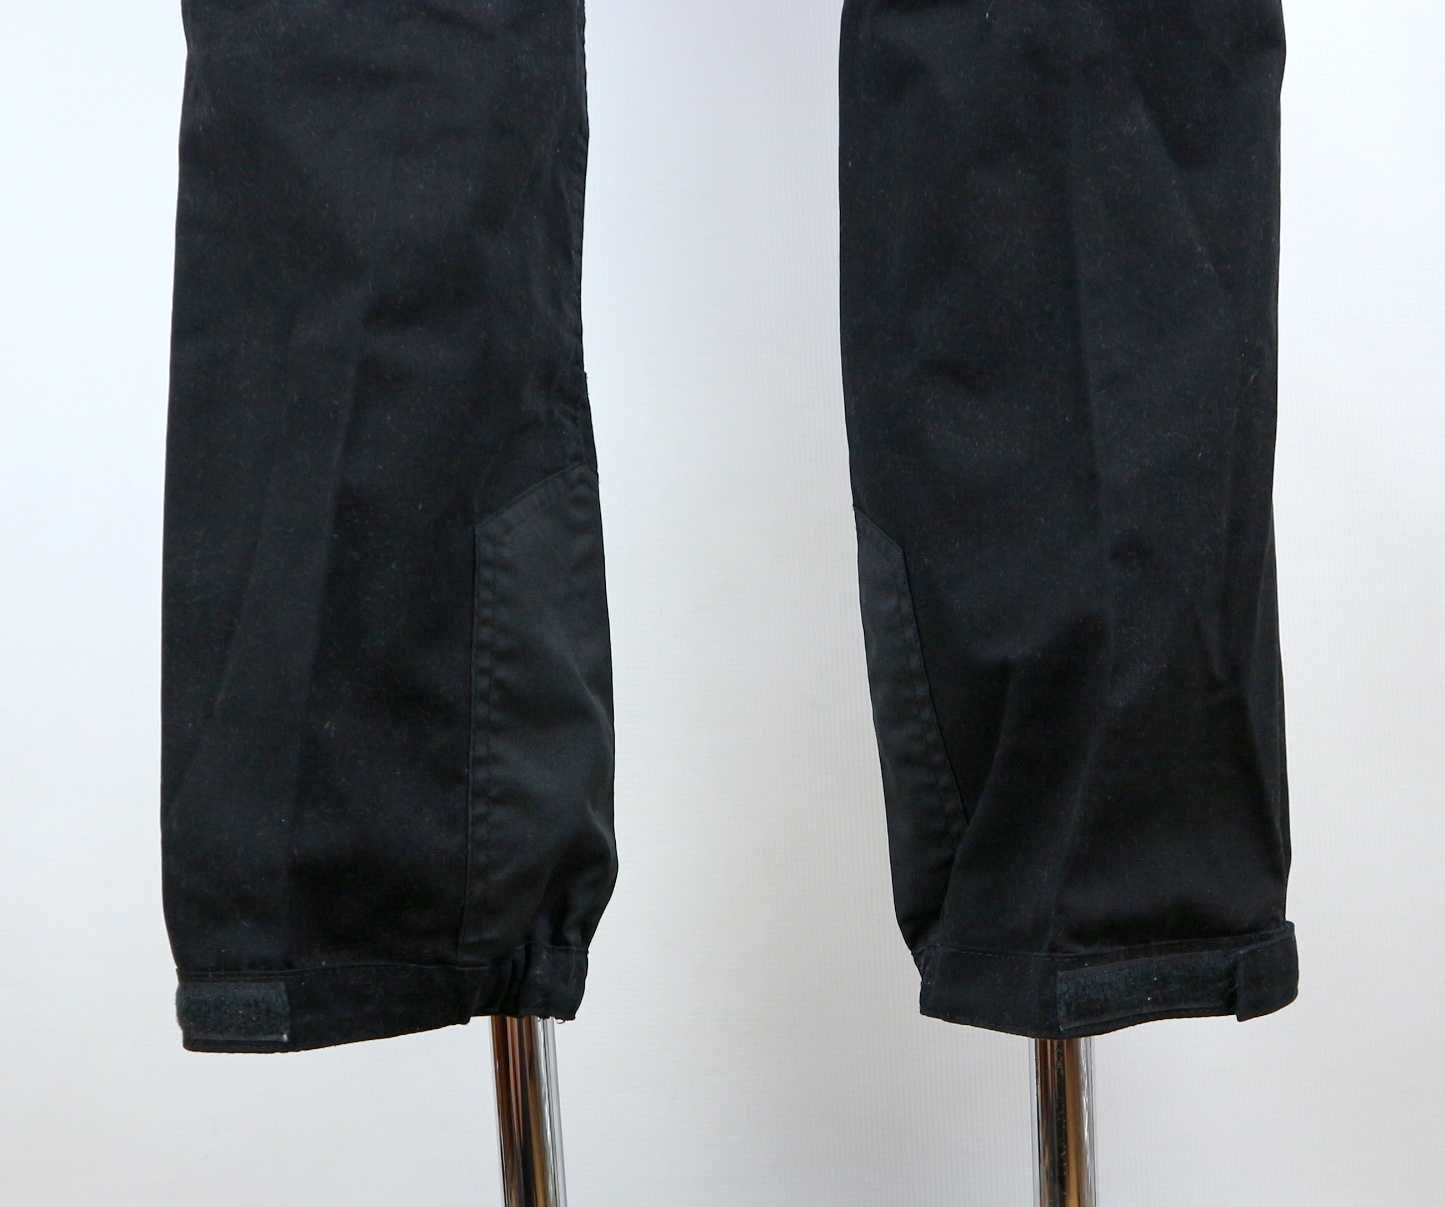 BLWR hybrydowe spodnie turystyczne 40 (L)